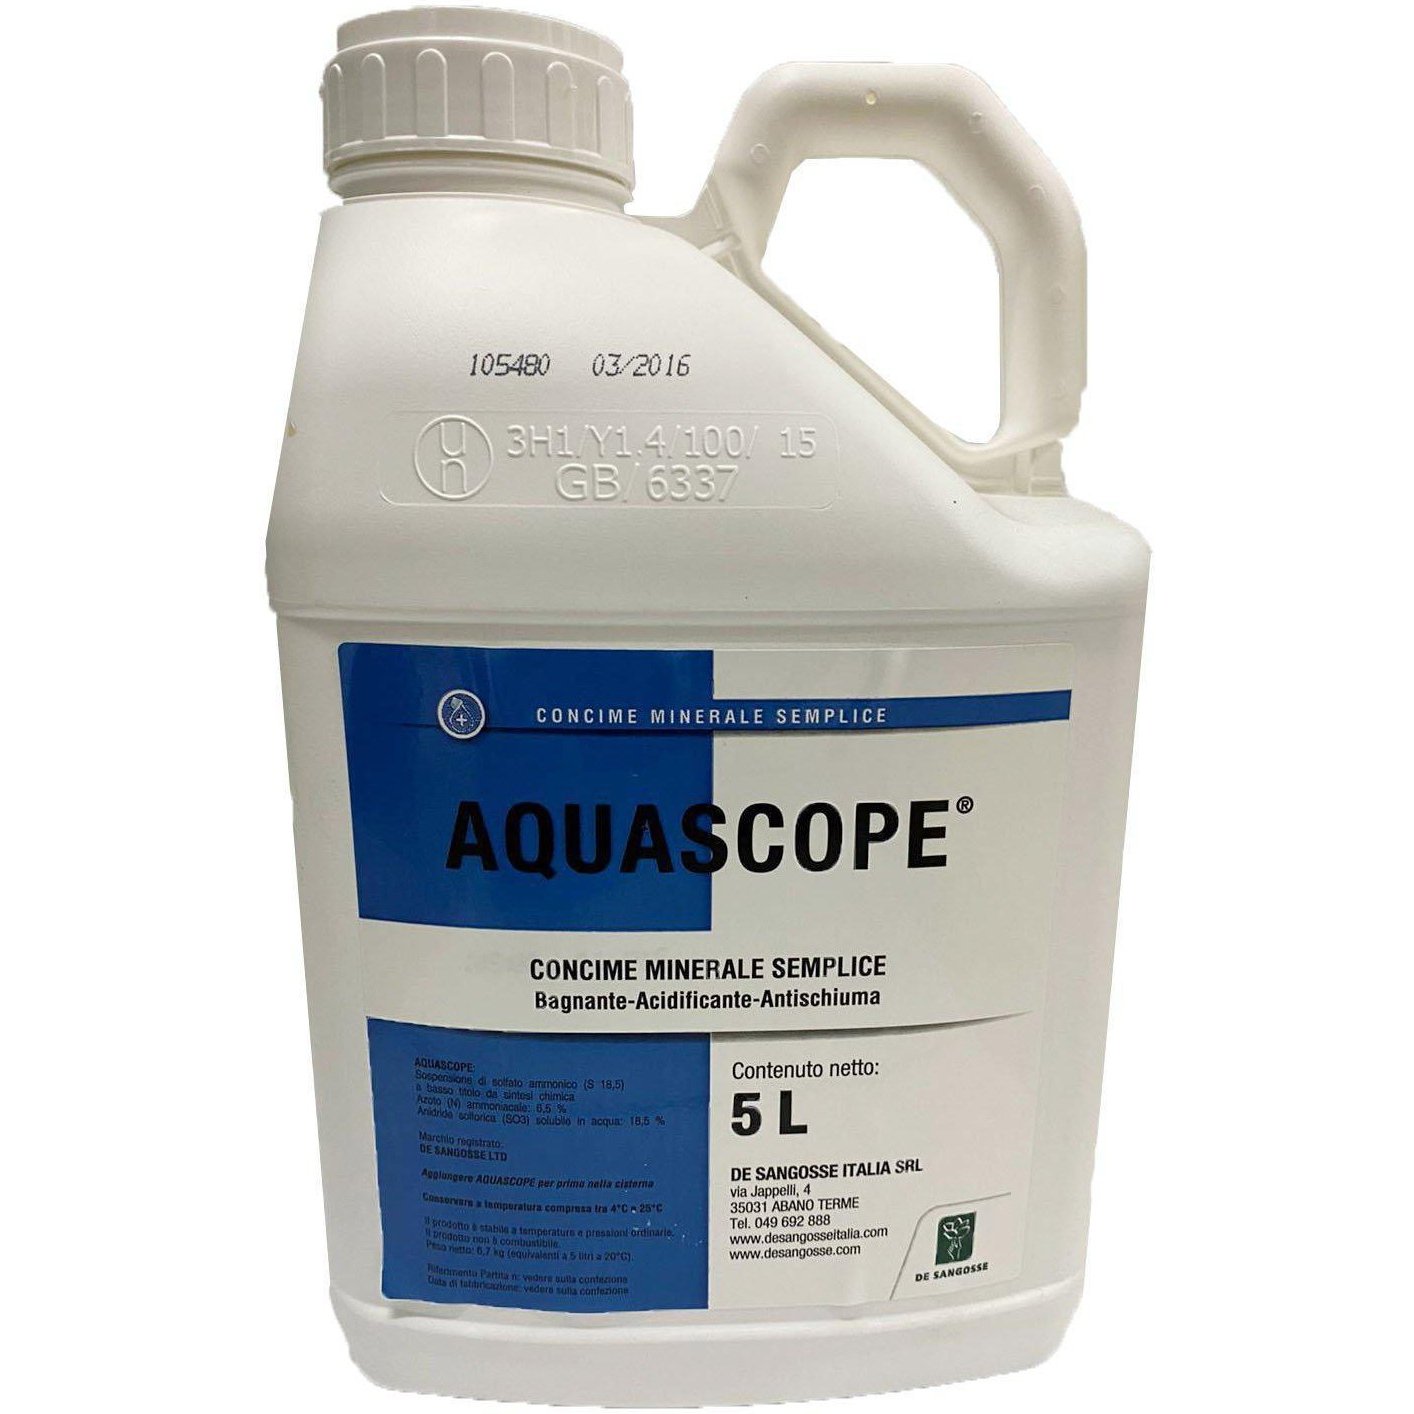 Aquascope - concime minerale semplice bagnante - acidificante - antischiuma-Farmagrishop.it